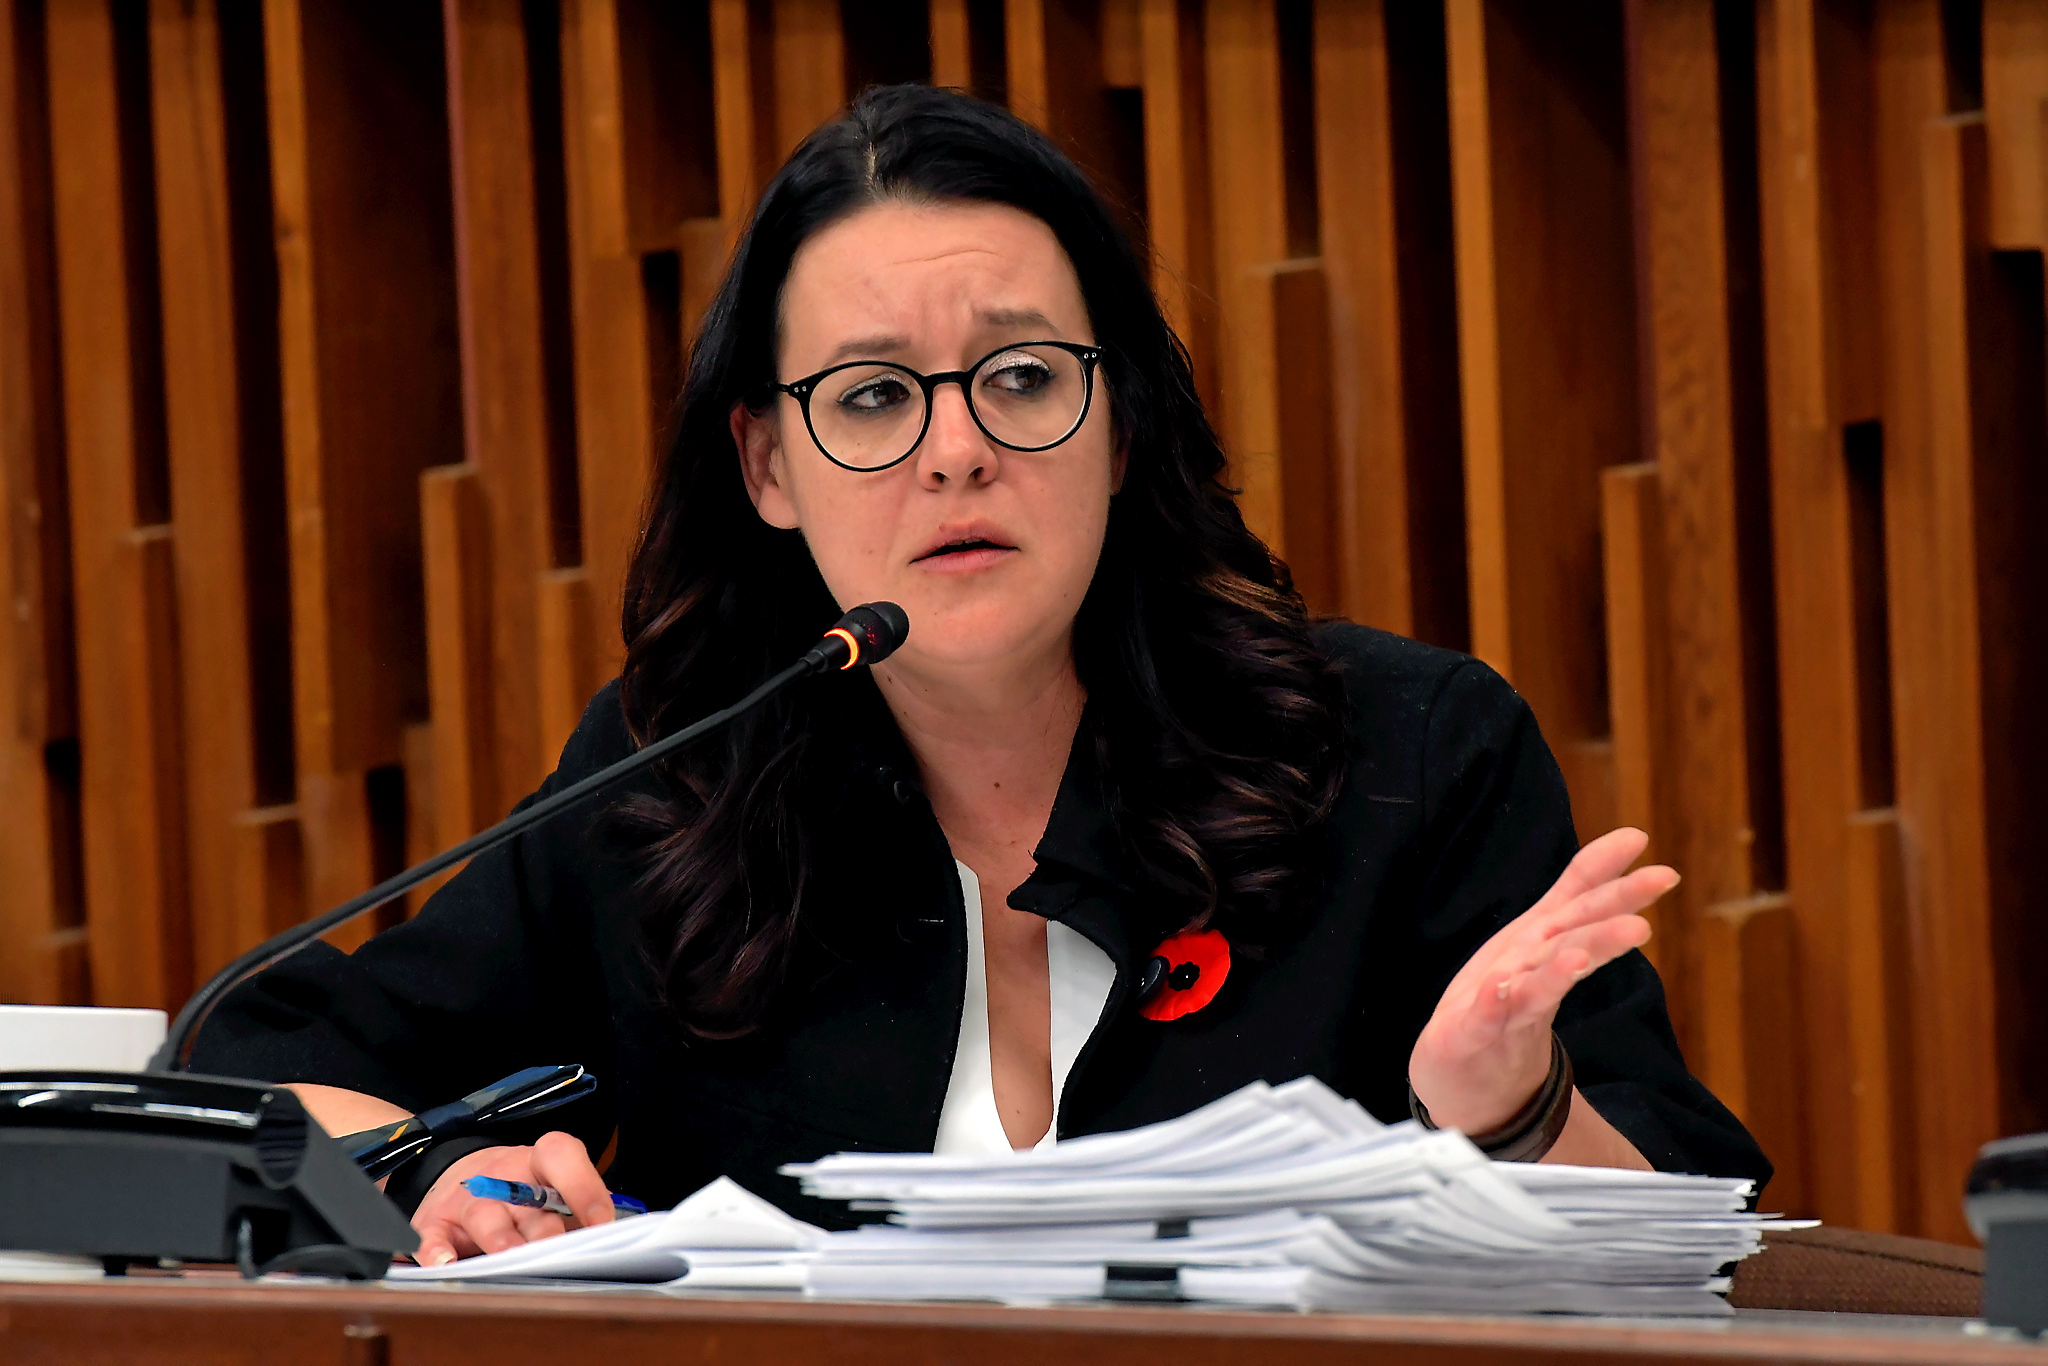 La mairesse Julie Dufour a tenu a souligner le travail de tous les employés de Saguenay à l’ouverture de la séance du conseil municipal qui soulignait la première année de son mandat.